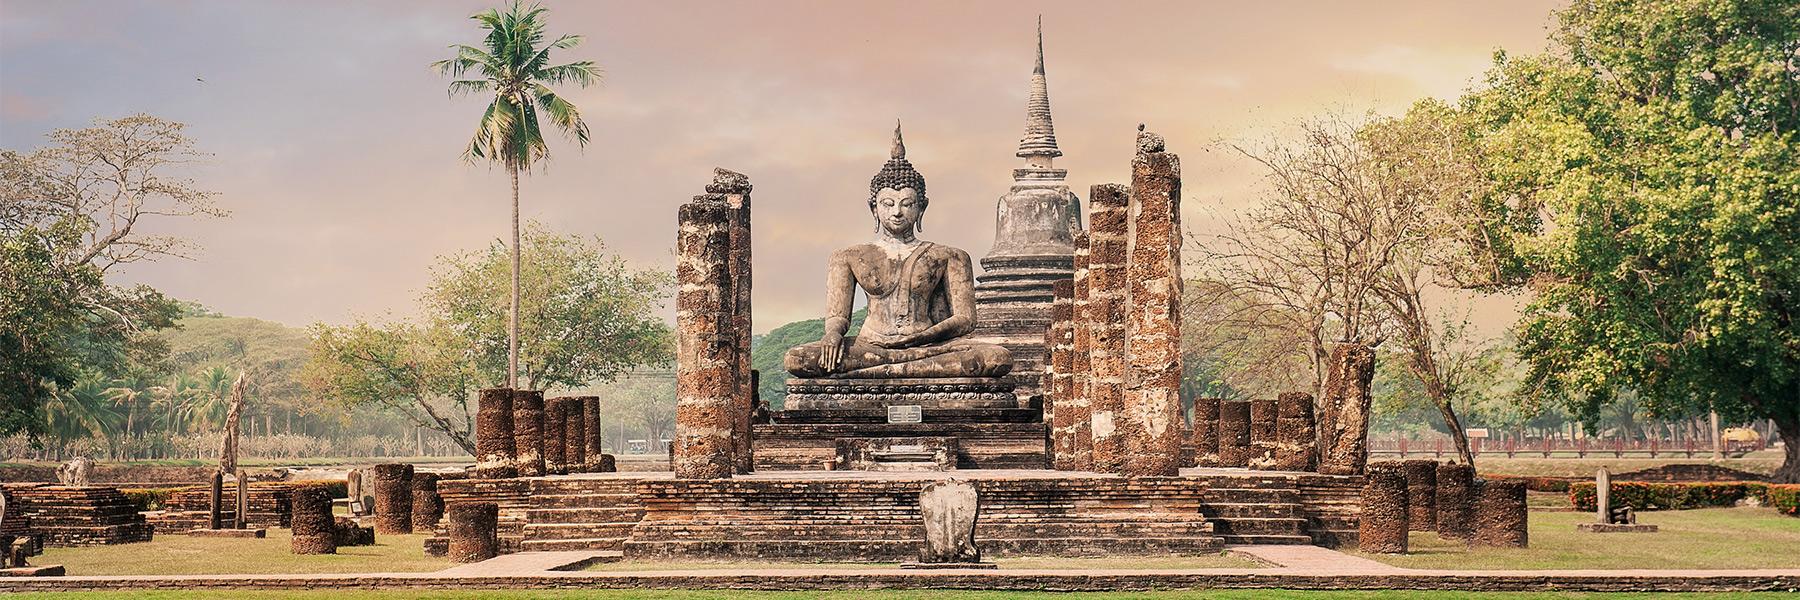 Why Visit Sukhothai?